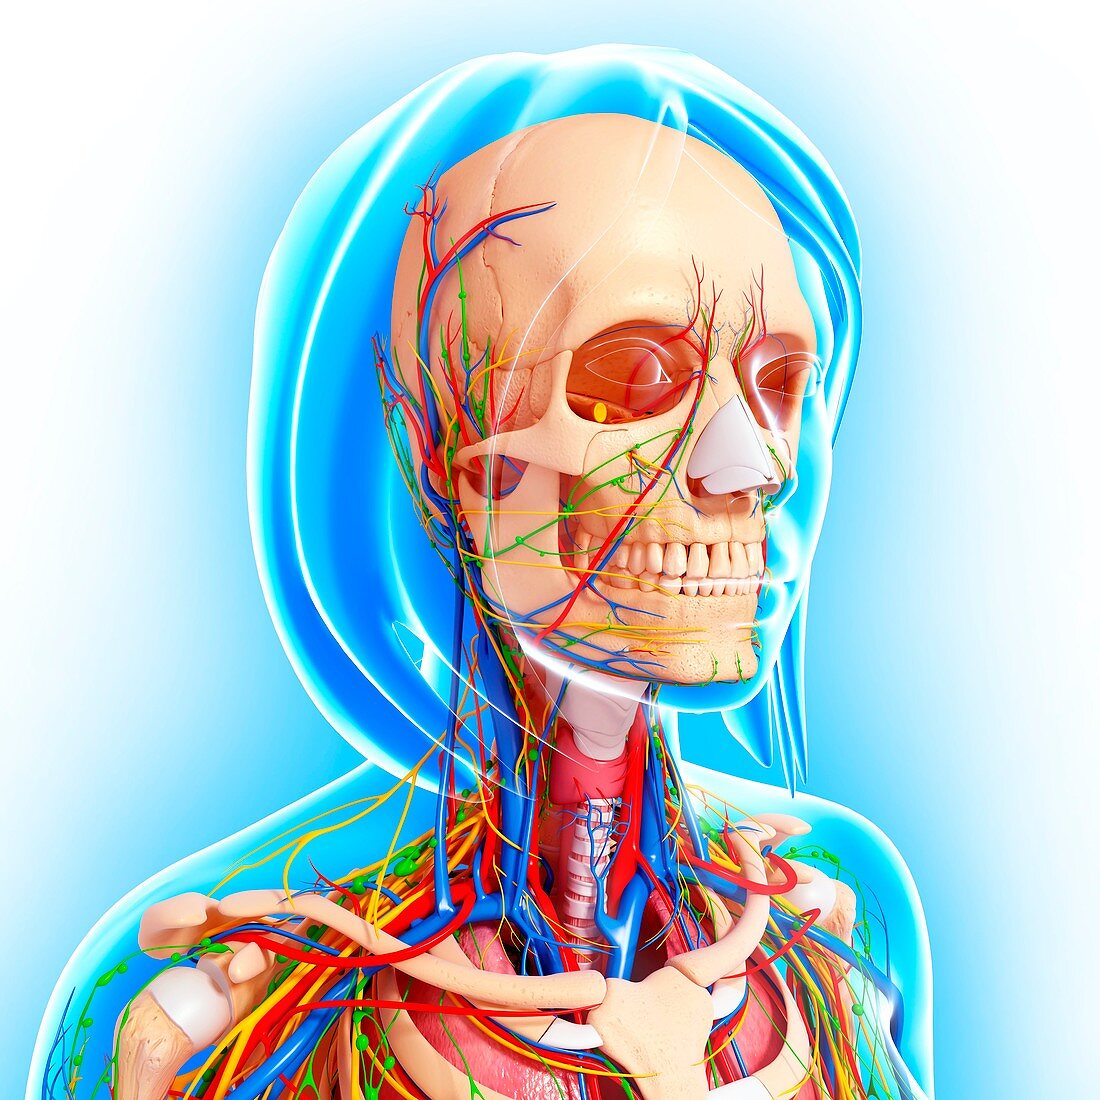 Upper body anatomy,artwork